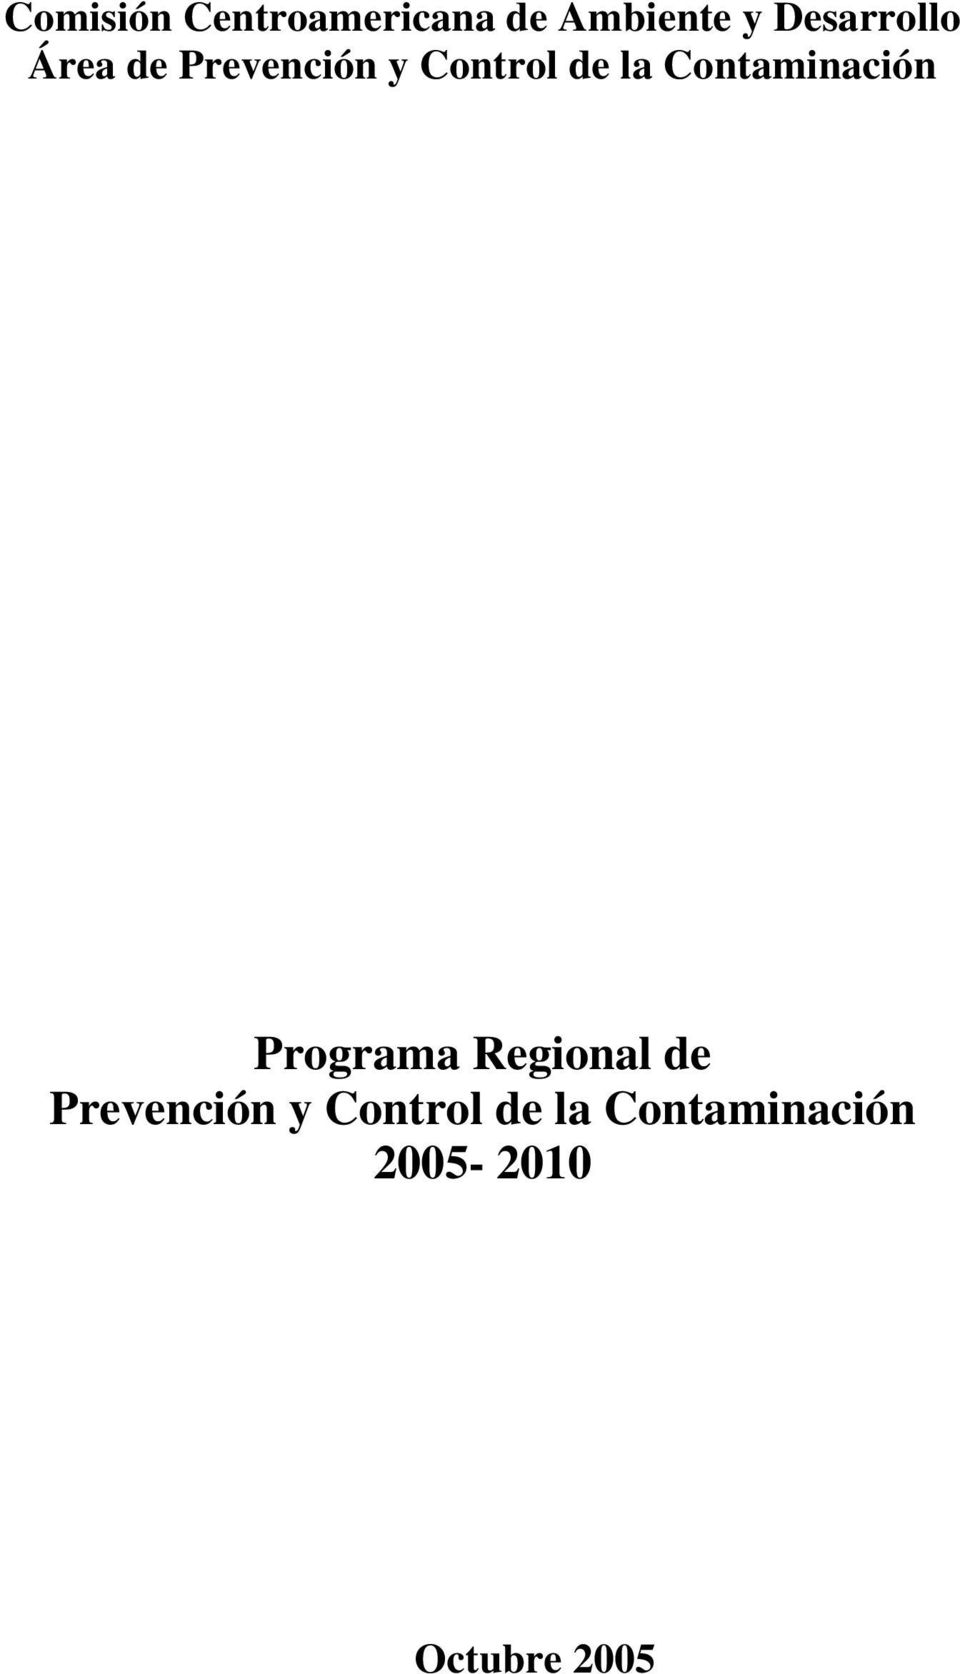 Contaminación Programa Regional de Prevención